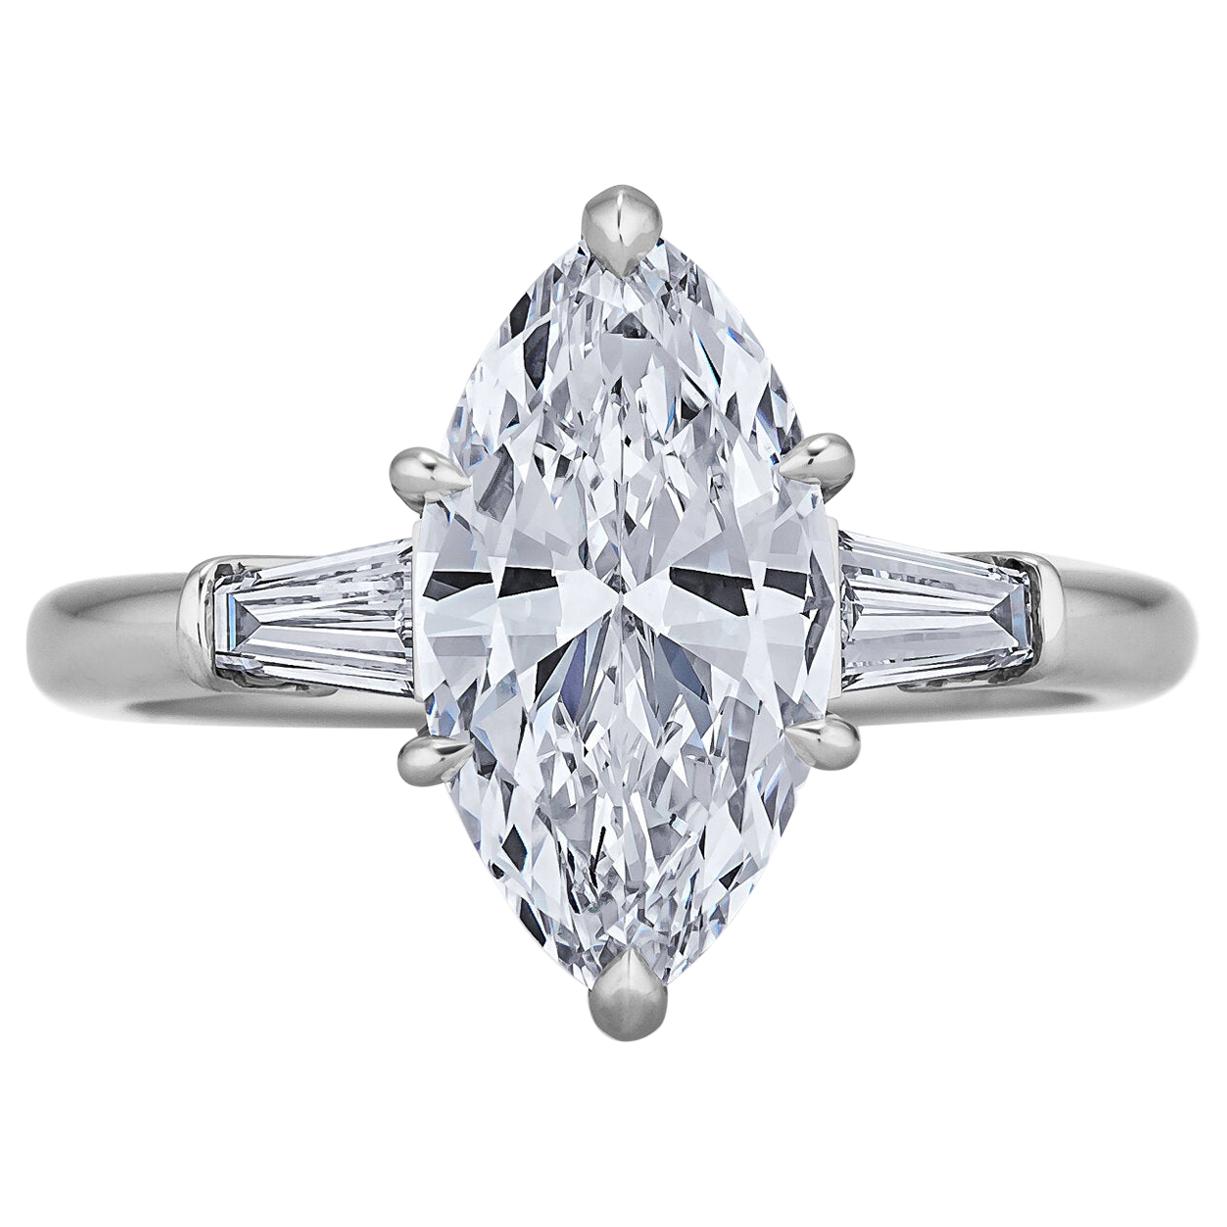 2.18 Carat Marquise Brilliant Cut Diamond Platinum Ring